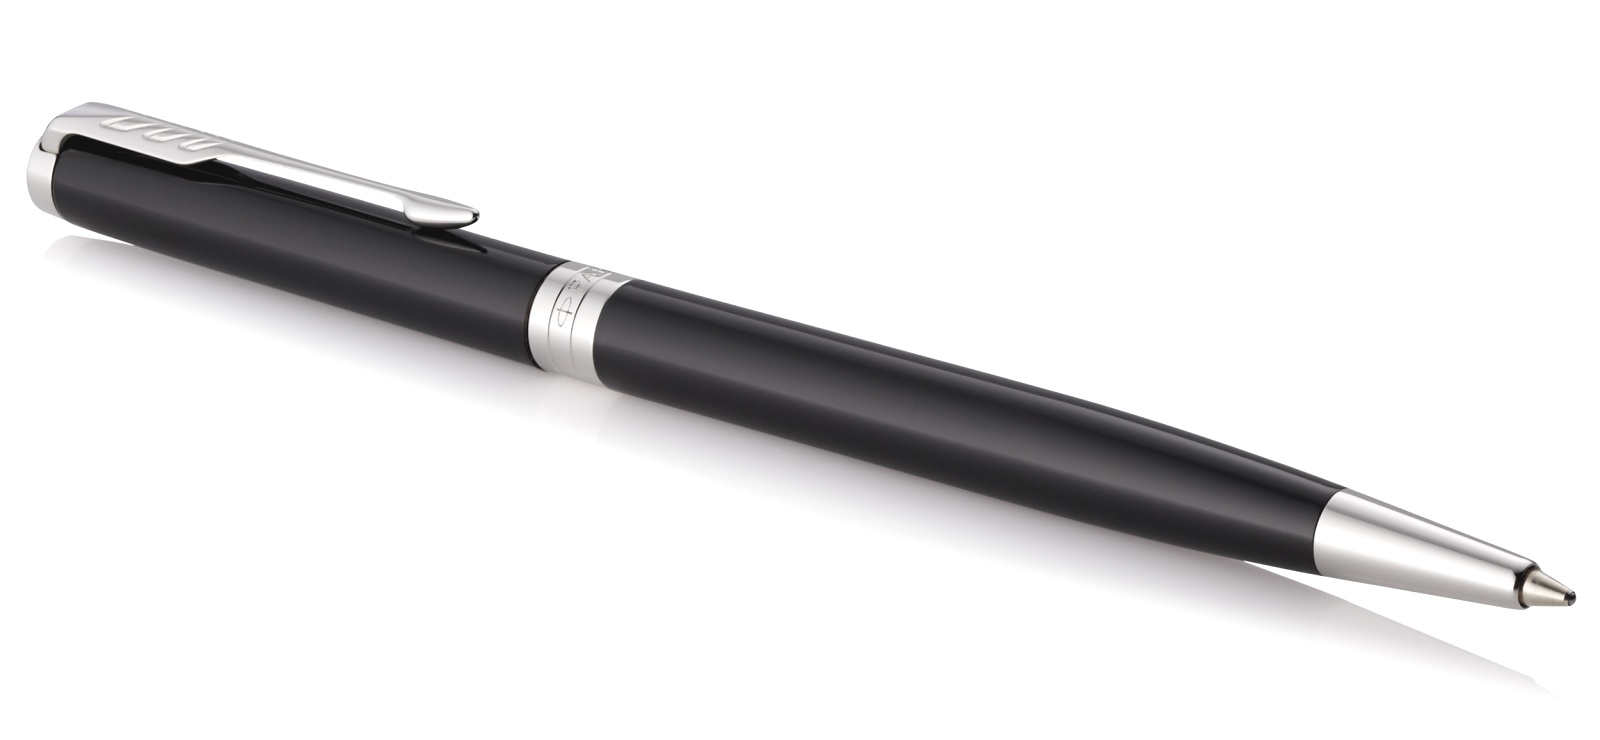  Шариковая ручка Parker Sonnet Slim Core K430, Lacquer Deep Black CT, фото 2